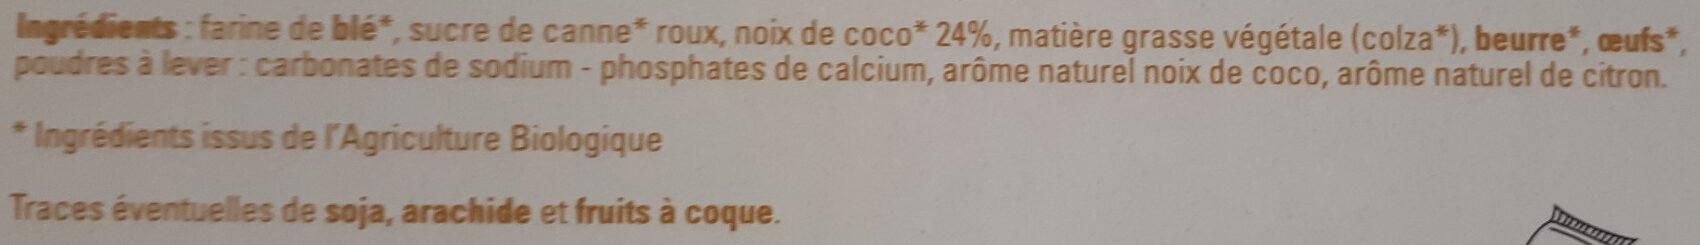 Sablés à la noix de coco saveur citron - Ingredients - fr